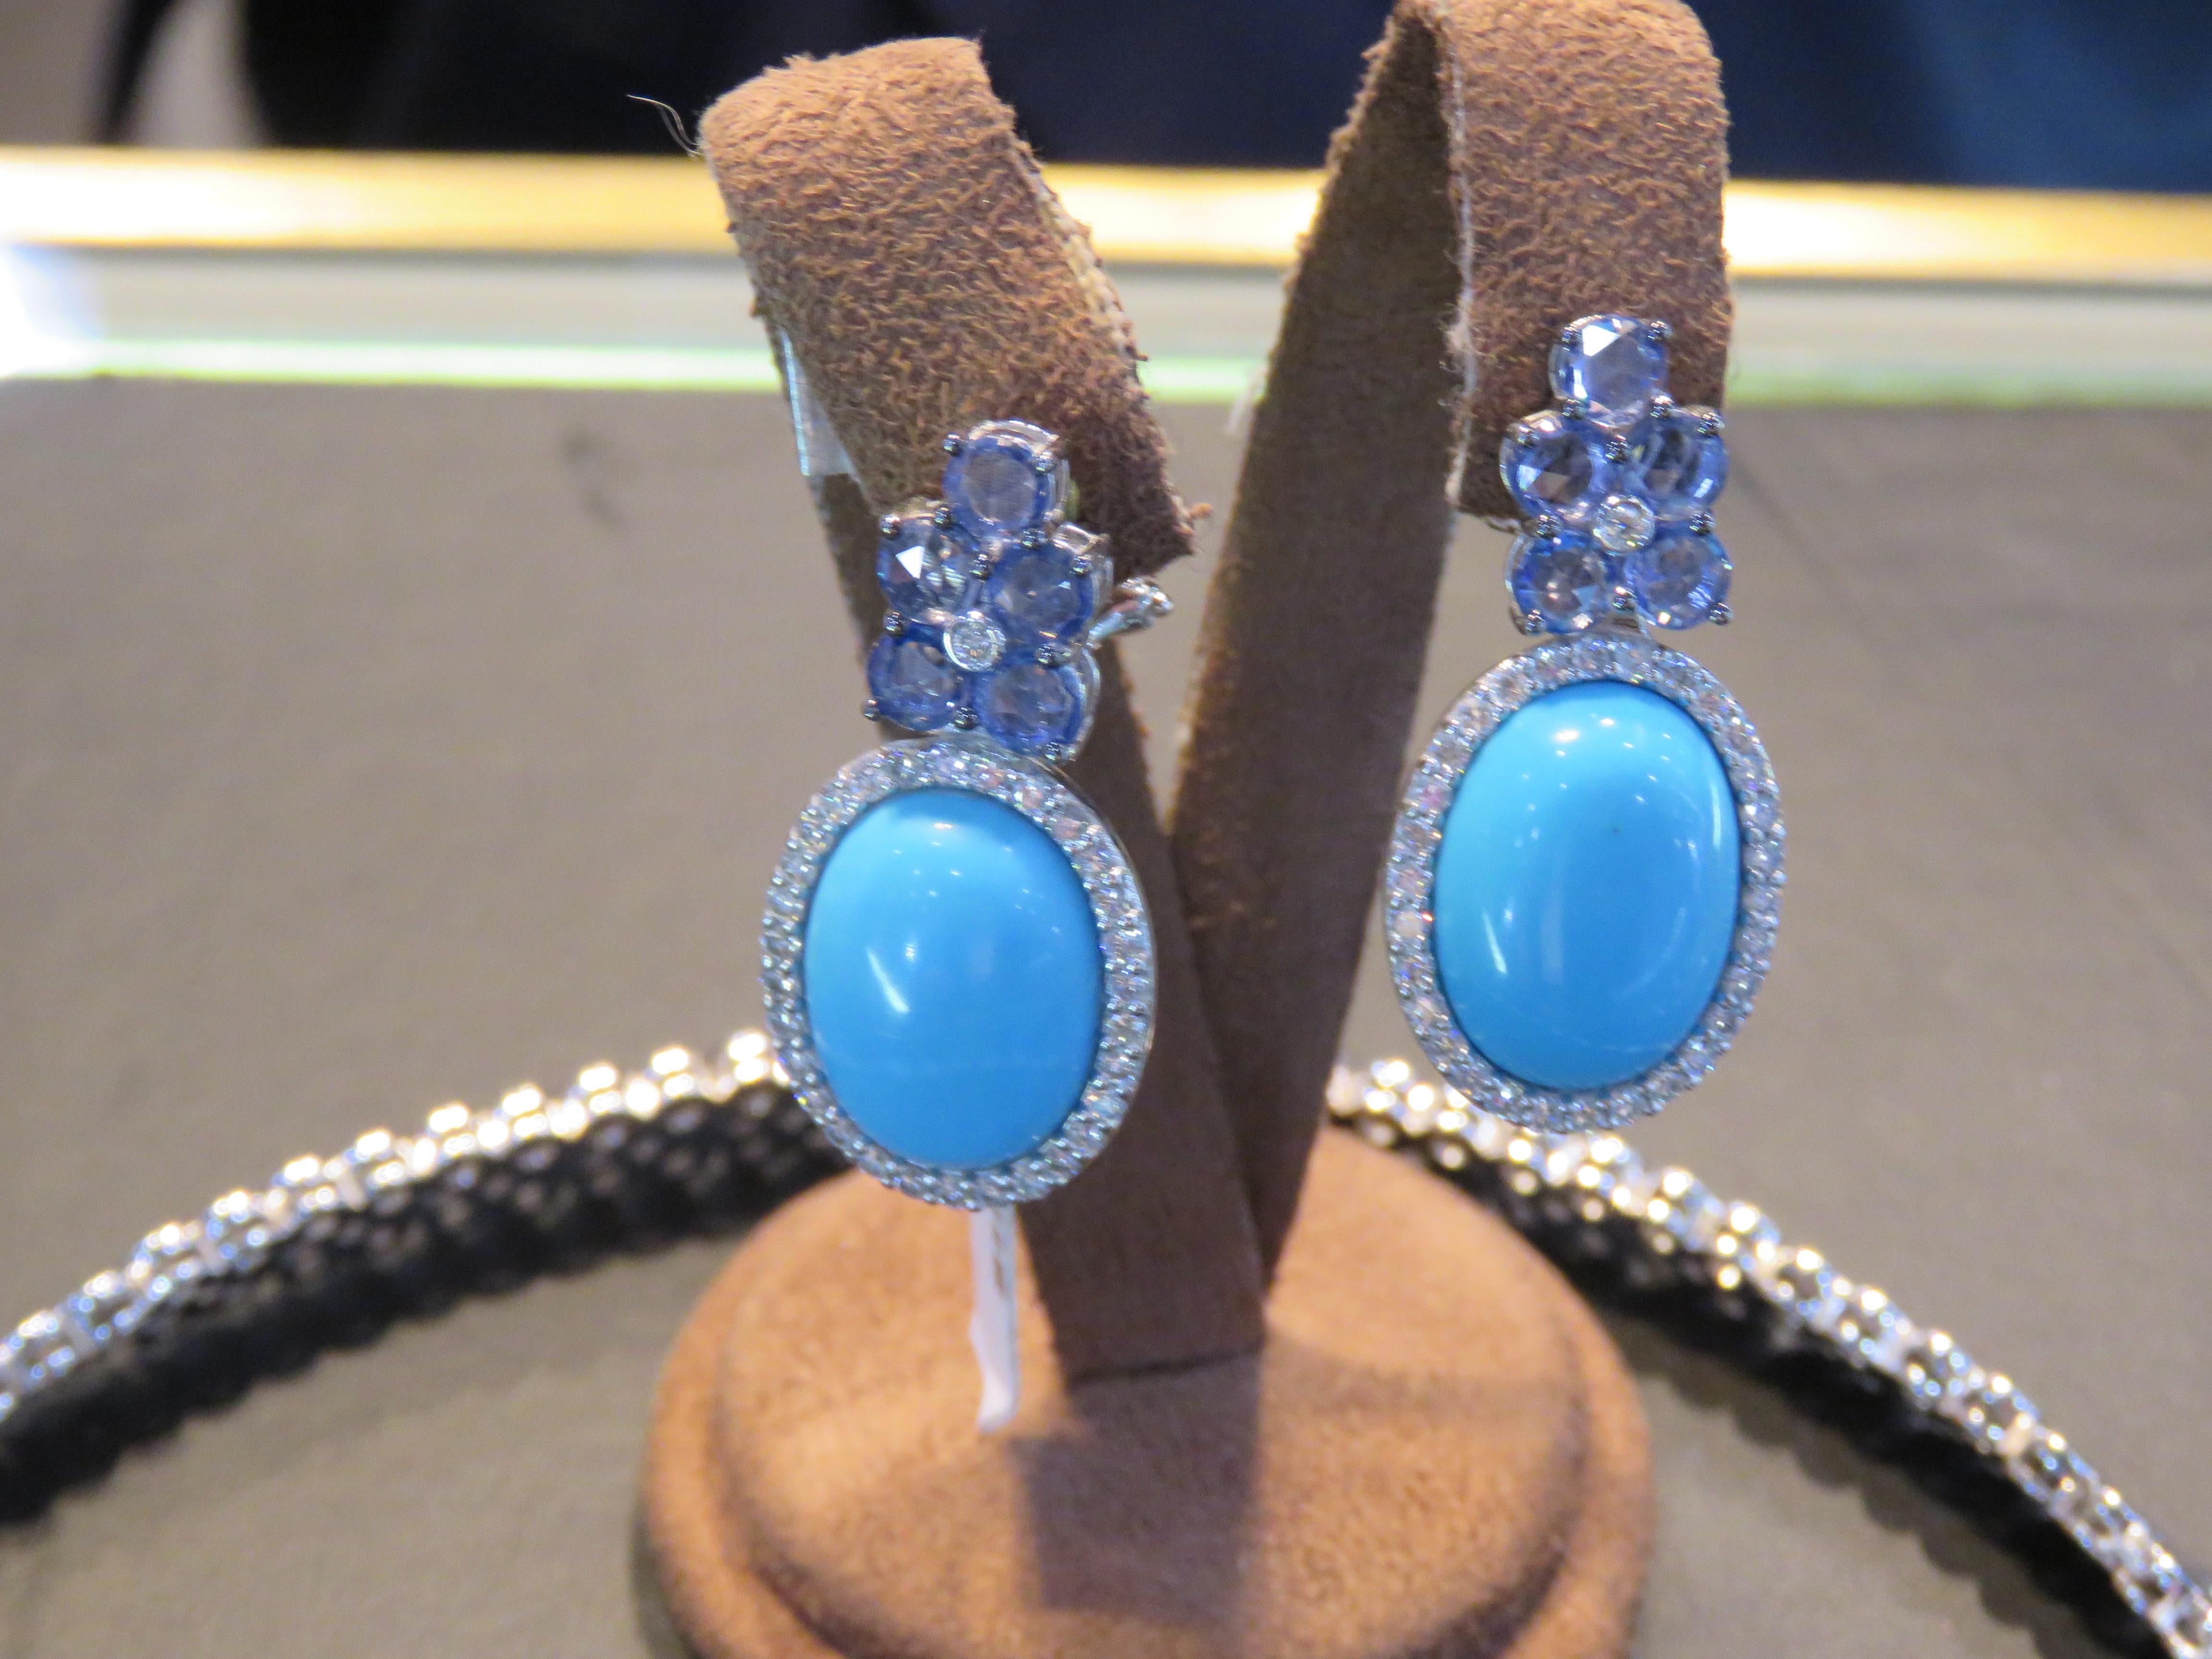 Die folgenden Elemente, die wir anbieten, ist ein Paar von seltenen 18KT Gold Large Türkis Diamant Blauer Saphir Dangle Ohrringe. Die Ohrringe bestehen aus fein gesetzten, großen, ovalen, wunderschönen Türkisen, die mit prächtigen, glitzernden